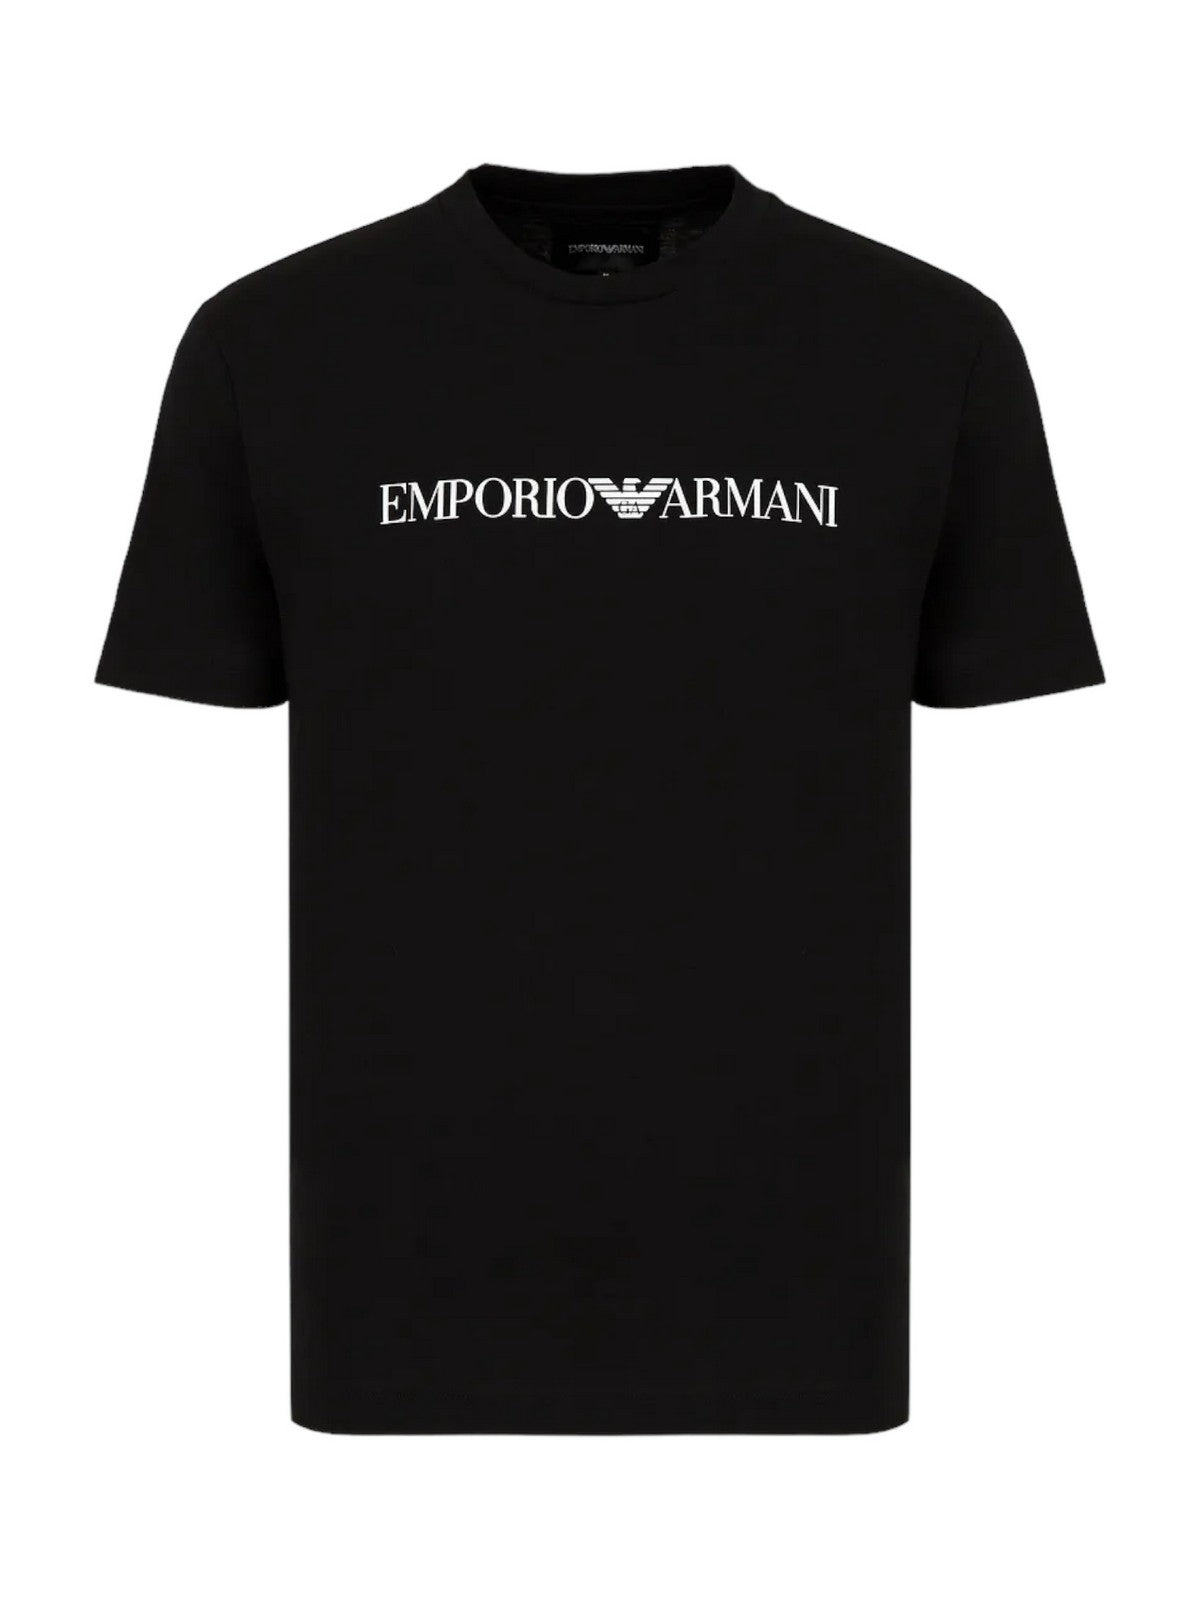 EMPORIO ARMANI T-Shirt e Polo Uomo  8N1TN5 1JPZZ 0021 Nero